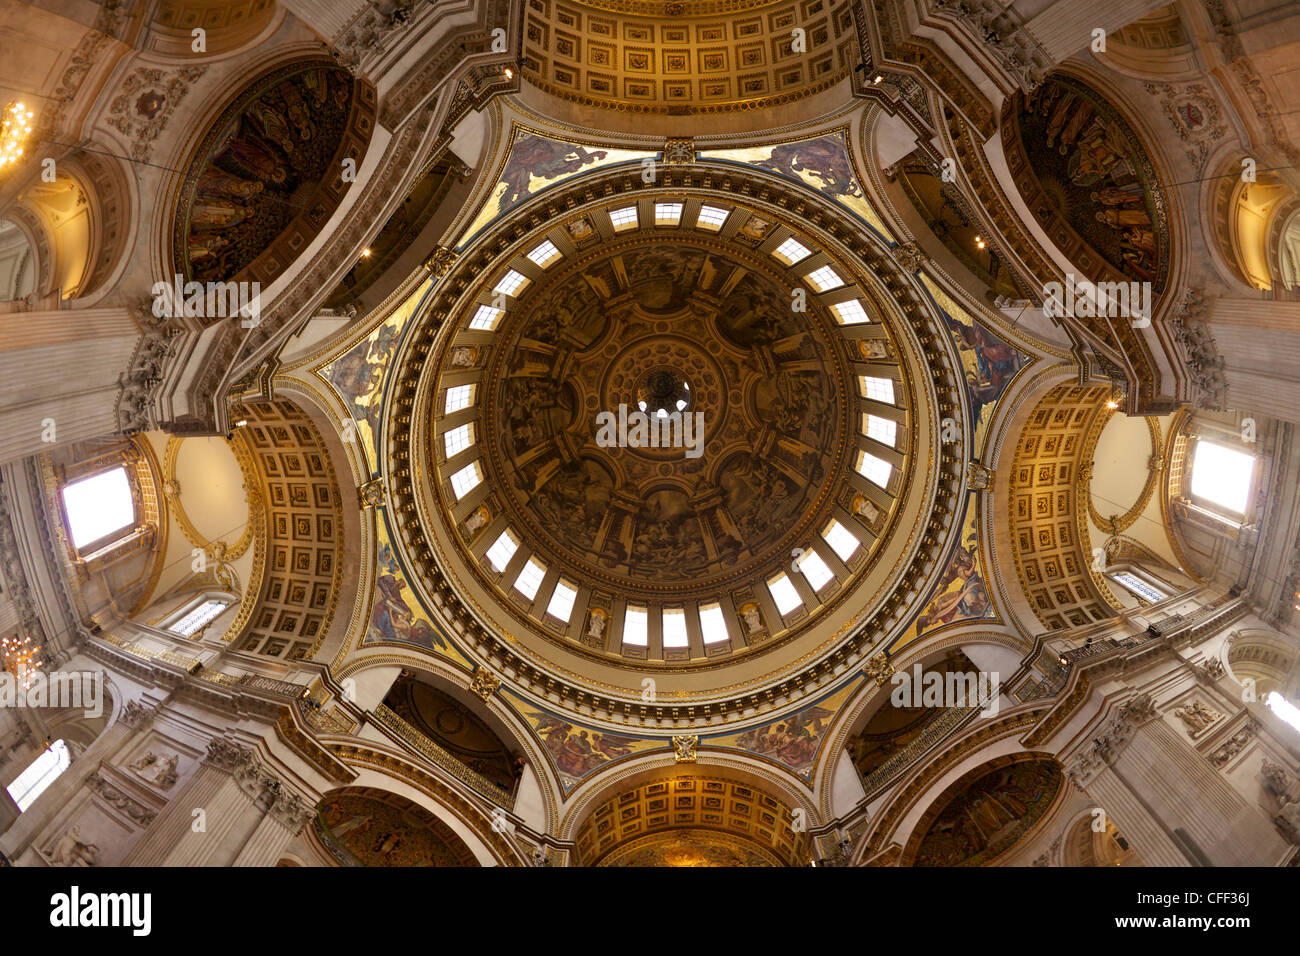 Innere der Kuppel der St. Pauls Cathedral, London, England, Vereinigtes Königreich, Vereinigtes Königreich, GB, Großbritannien, britische Inseln, Europa Stockfoto